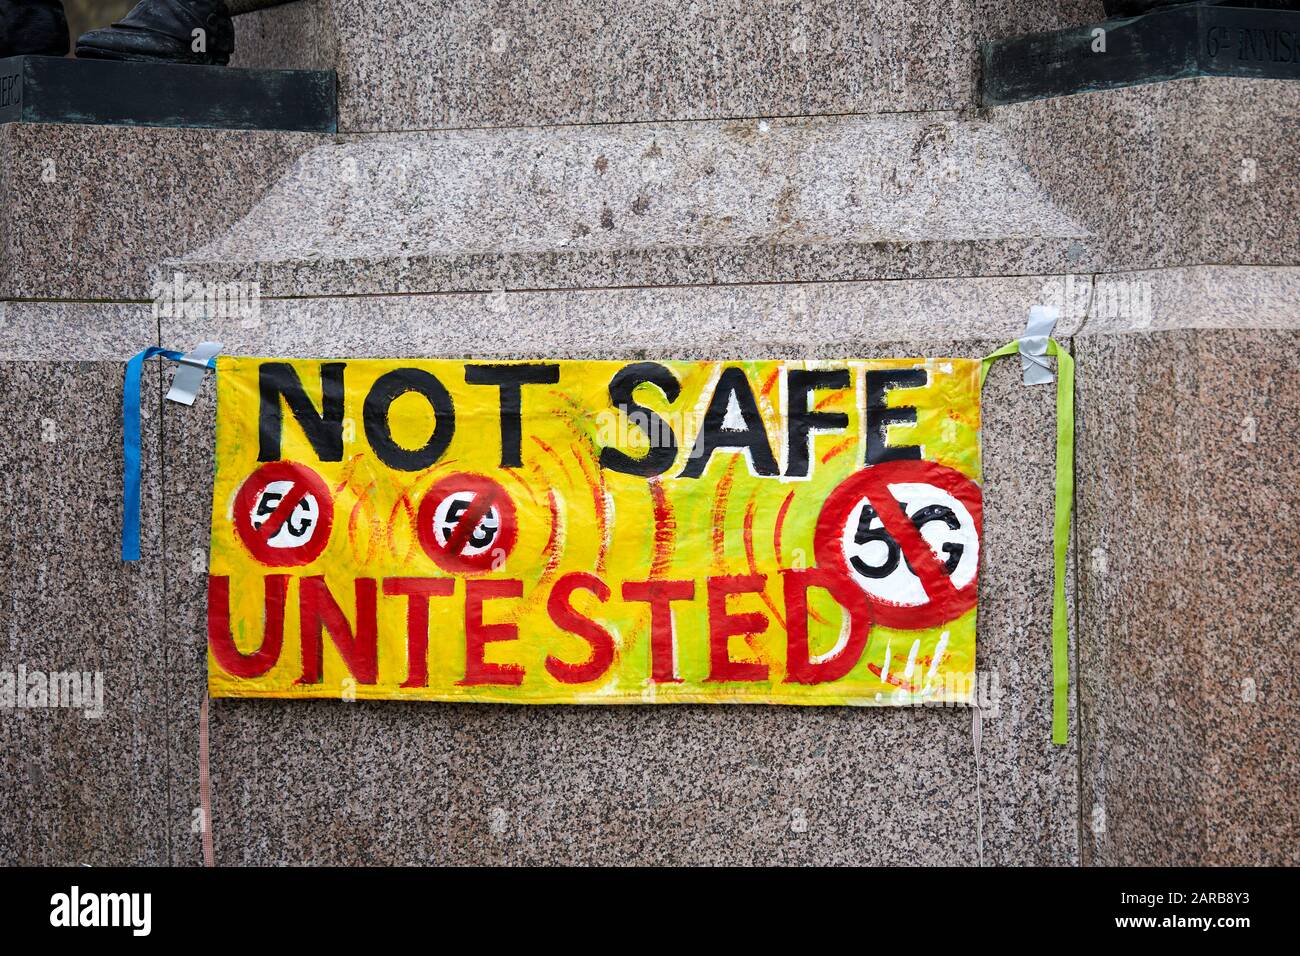 Londres, Reino Unido - 25 de enero de 2020: Un banner crítico de 5G se muestra en una protesta contra la introducción de la tecnología. Foto de stock